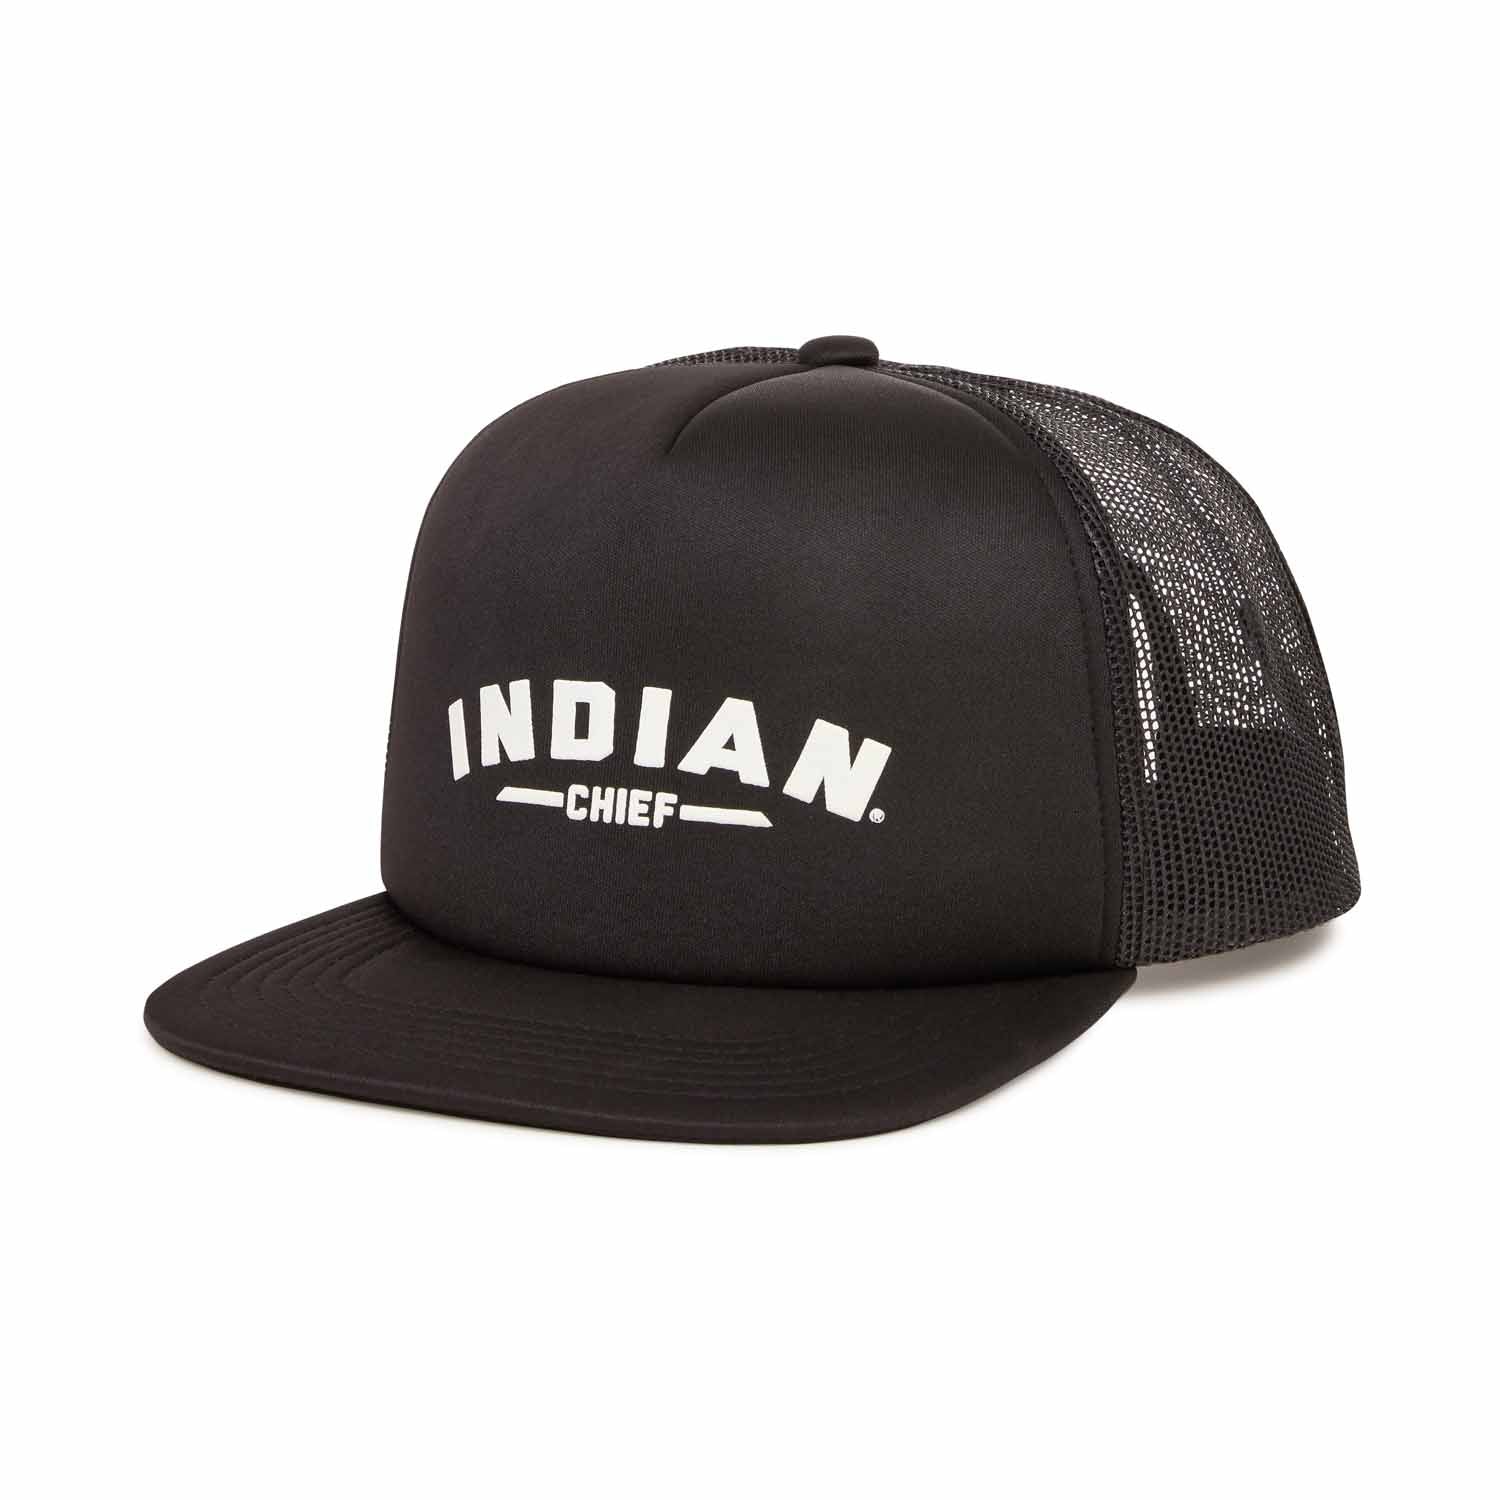 Chief Trucker Hat, Black